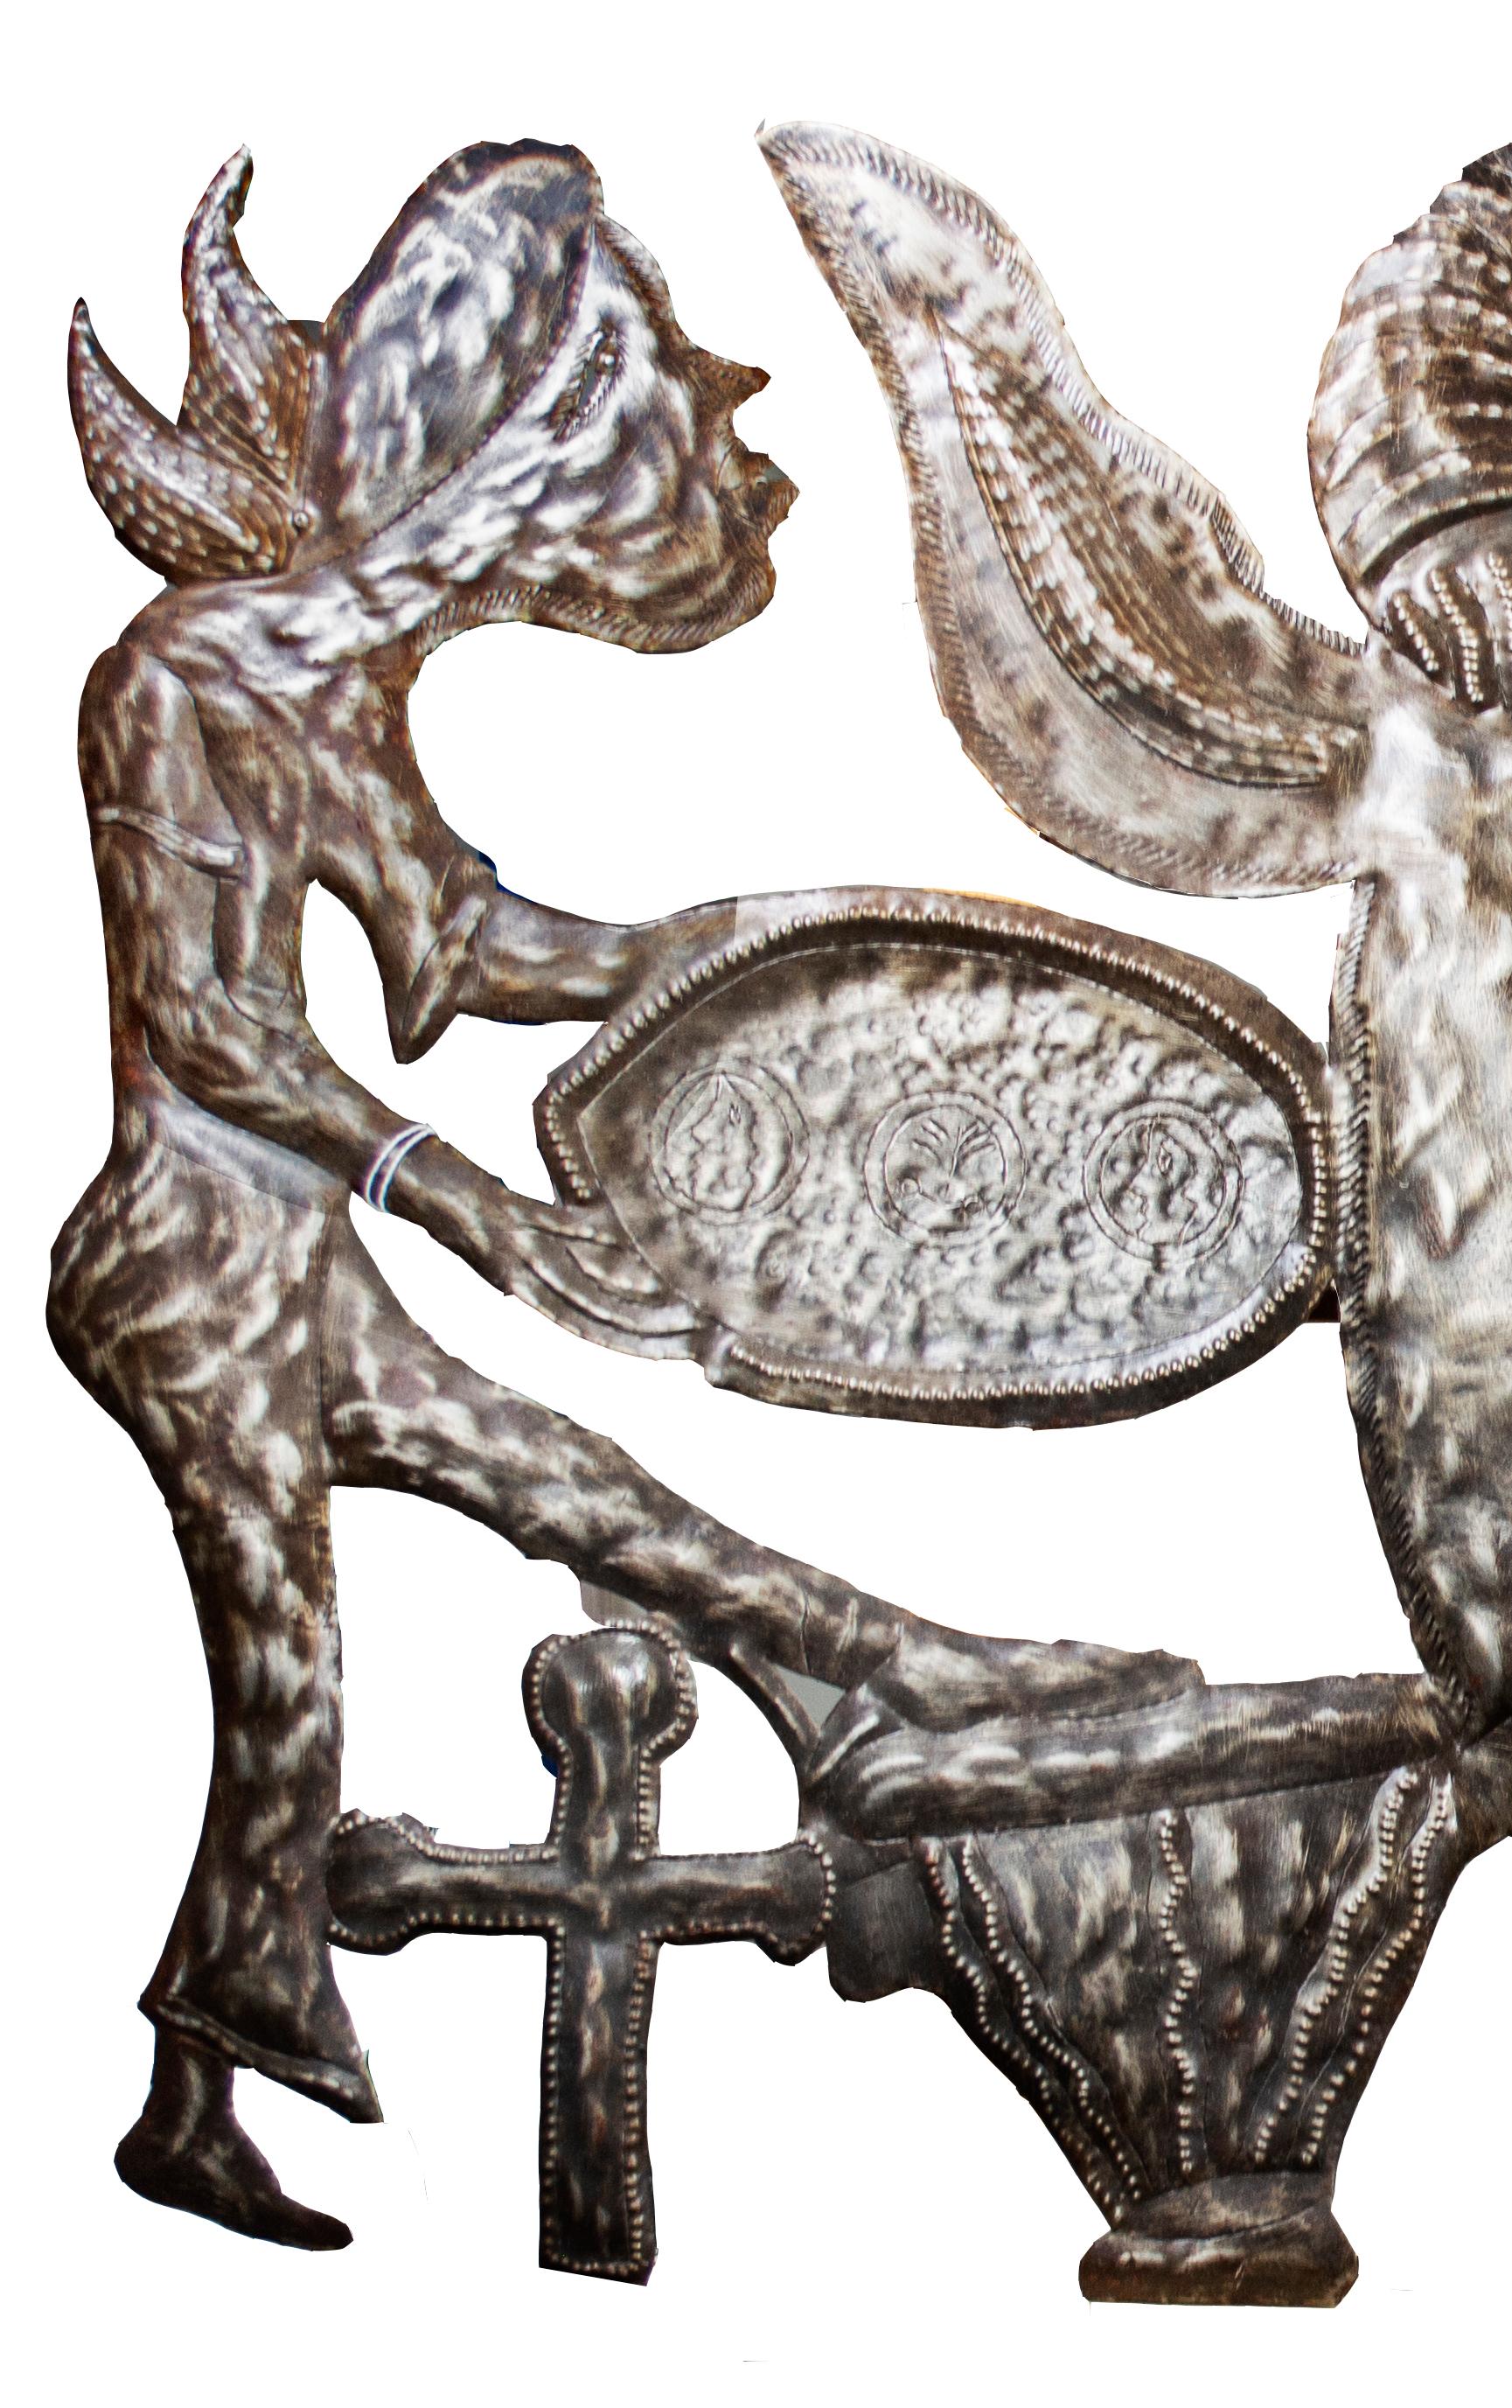 Ce relief en métal, réalisé par l'artiste Jean Carlo Brutus, représente le personnage du voudou haïtien connu sous le nom de Bossou. Bossou est l'un des Lwa - le panthéon des divinités qui sert d'intermédiaire entre Dieu et les hommes et avec lequel